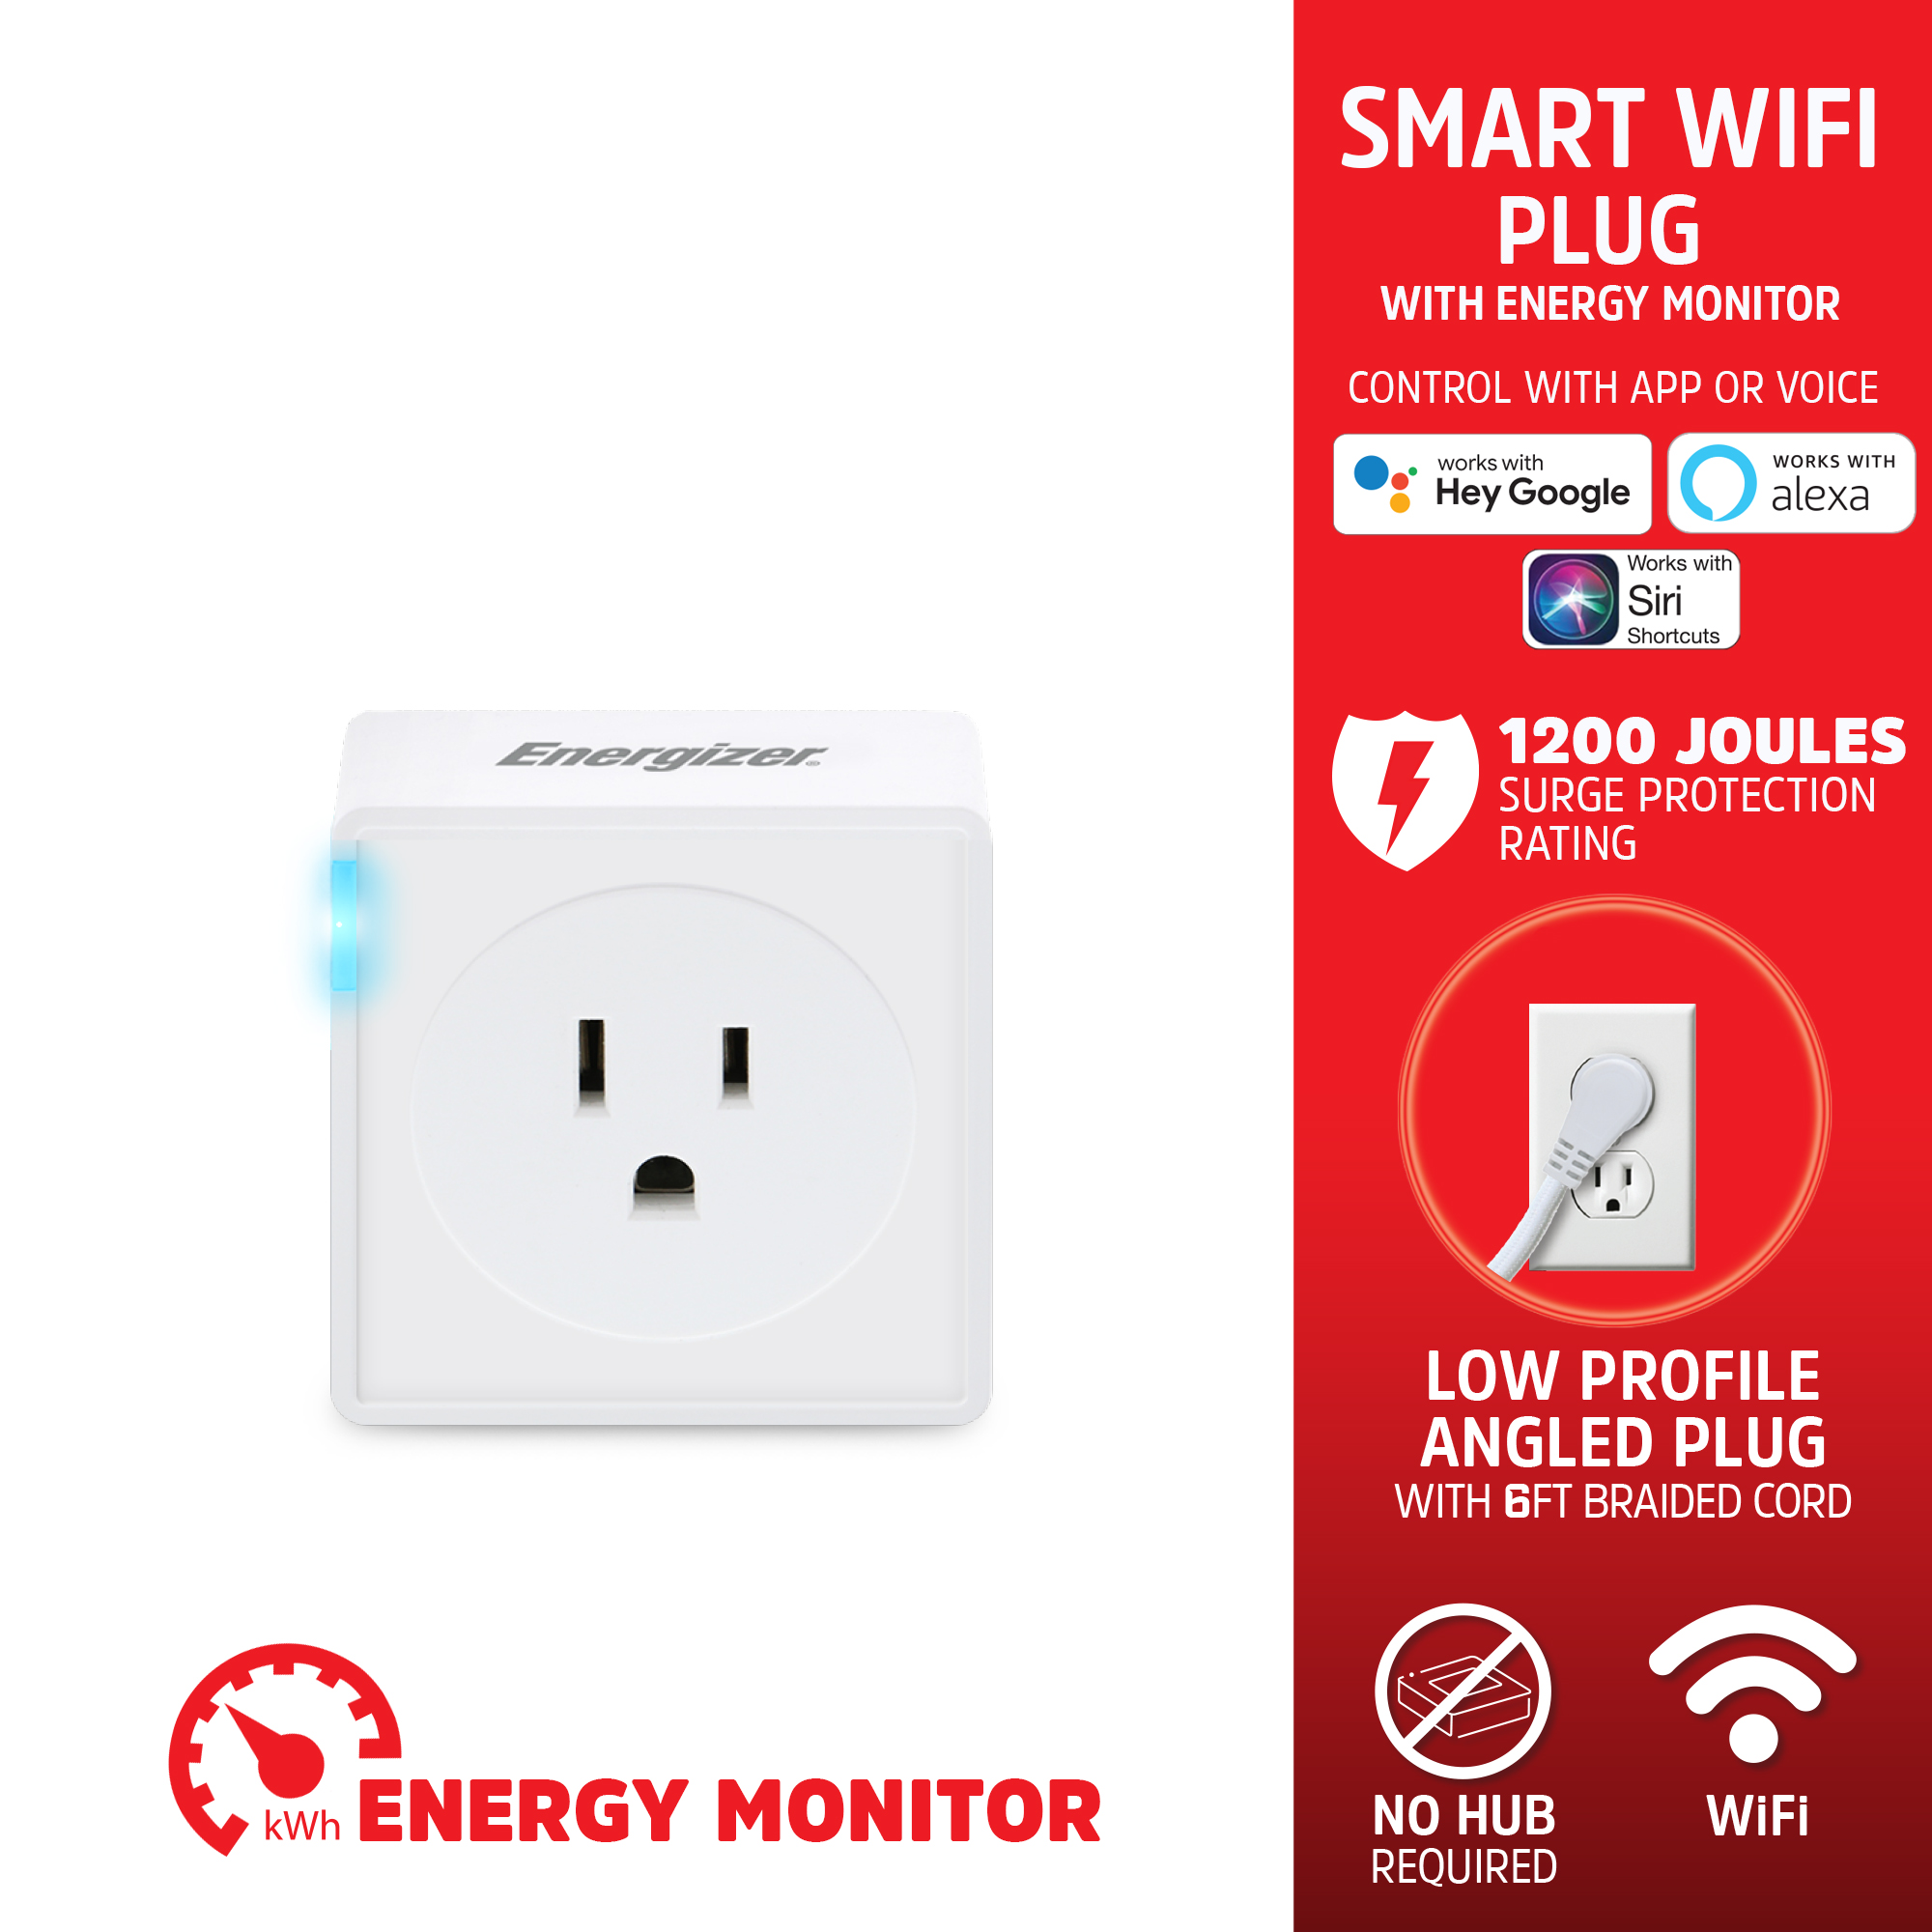 WiFi Smart Plugs, Smart WiFi Plug with Energy Monitor - Ener-J